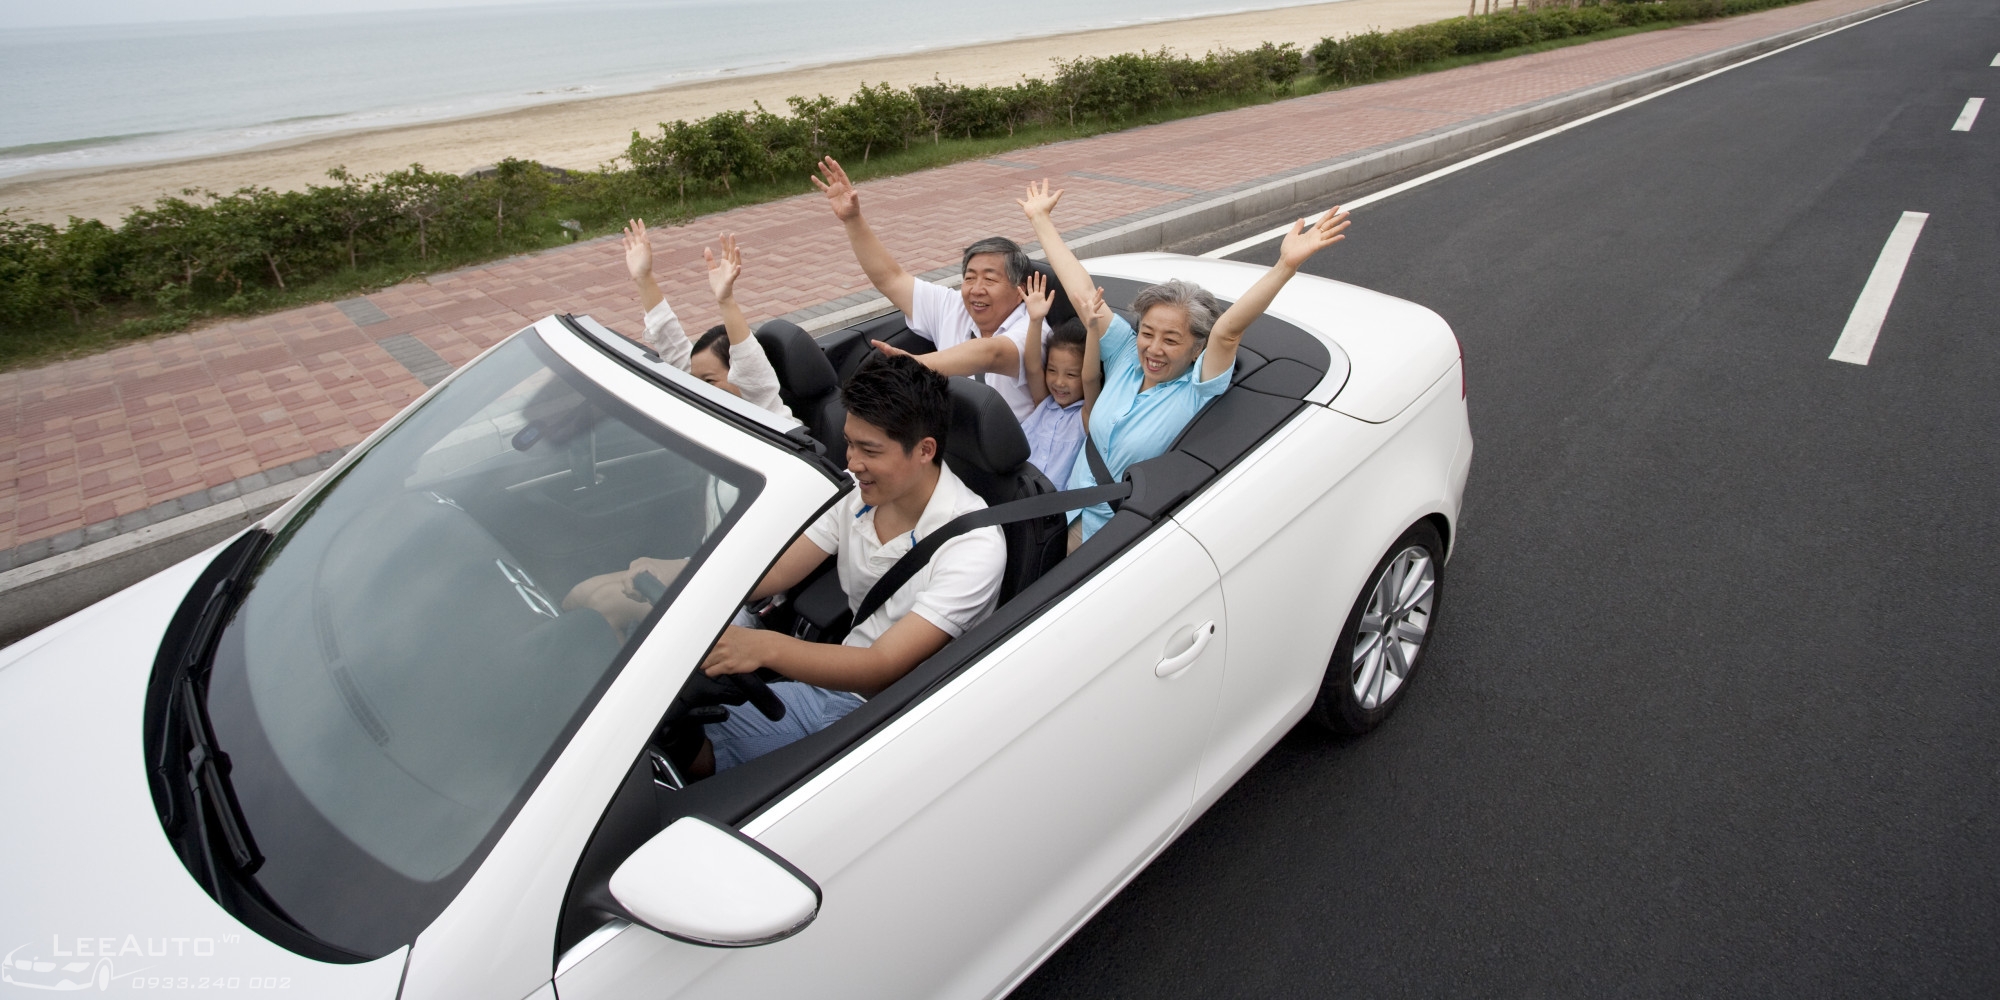 Thuê xe ô tô tự lái là lựa chọn tối ưu cho khách du lịch đi theo nhóm đông người, gia đình. 